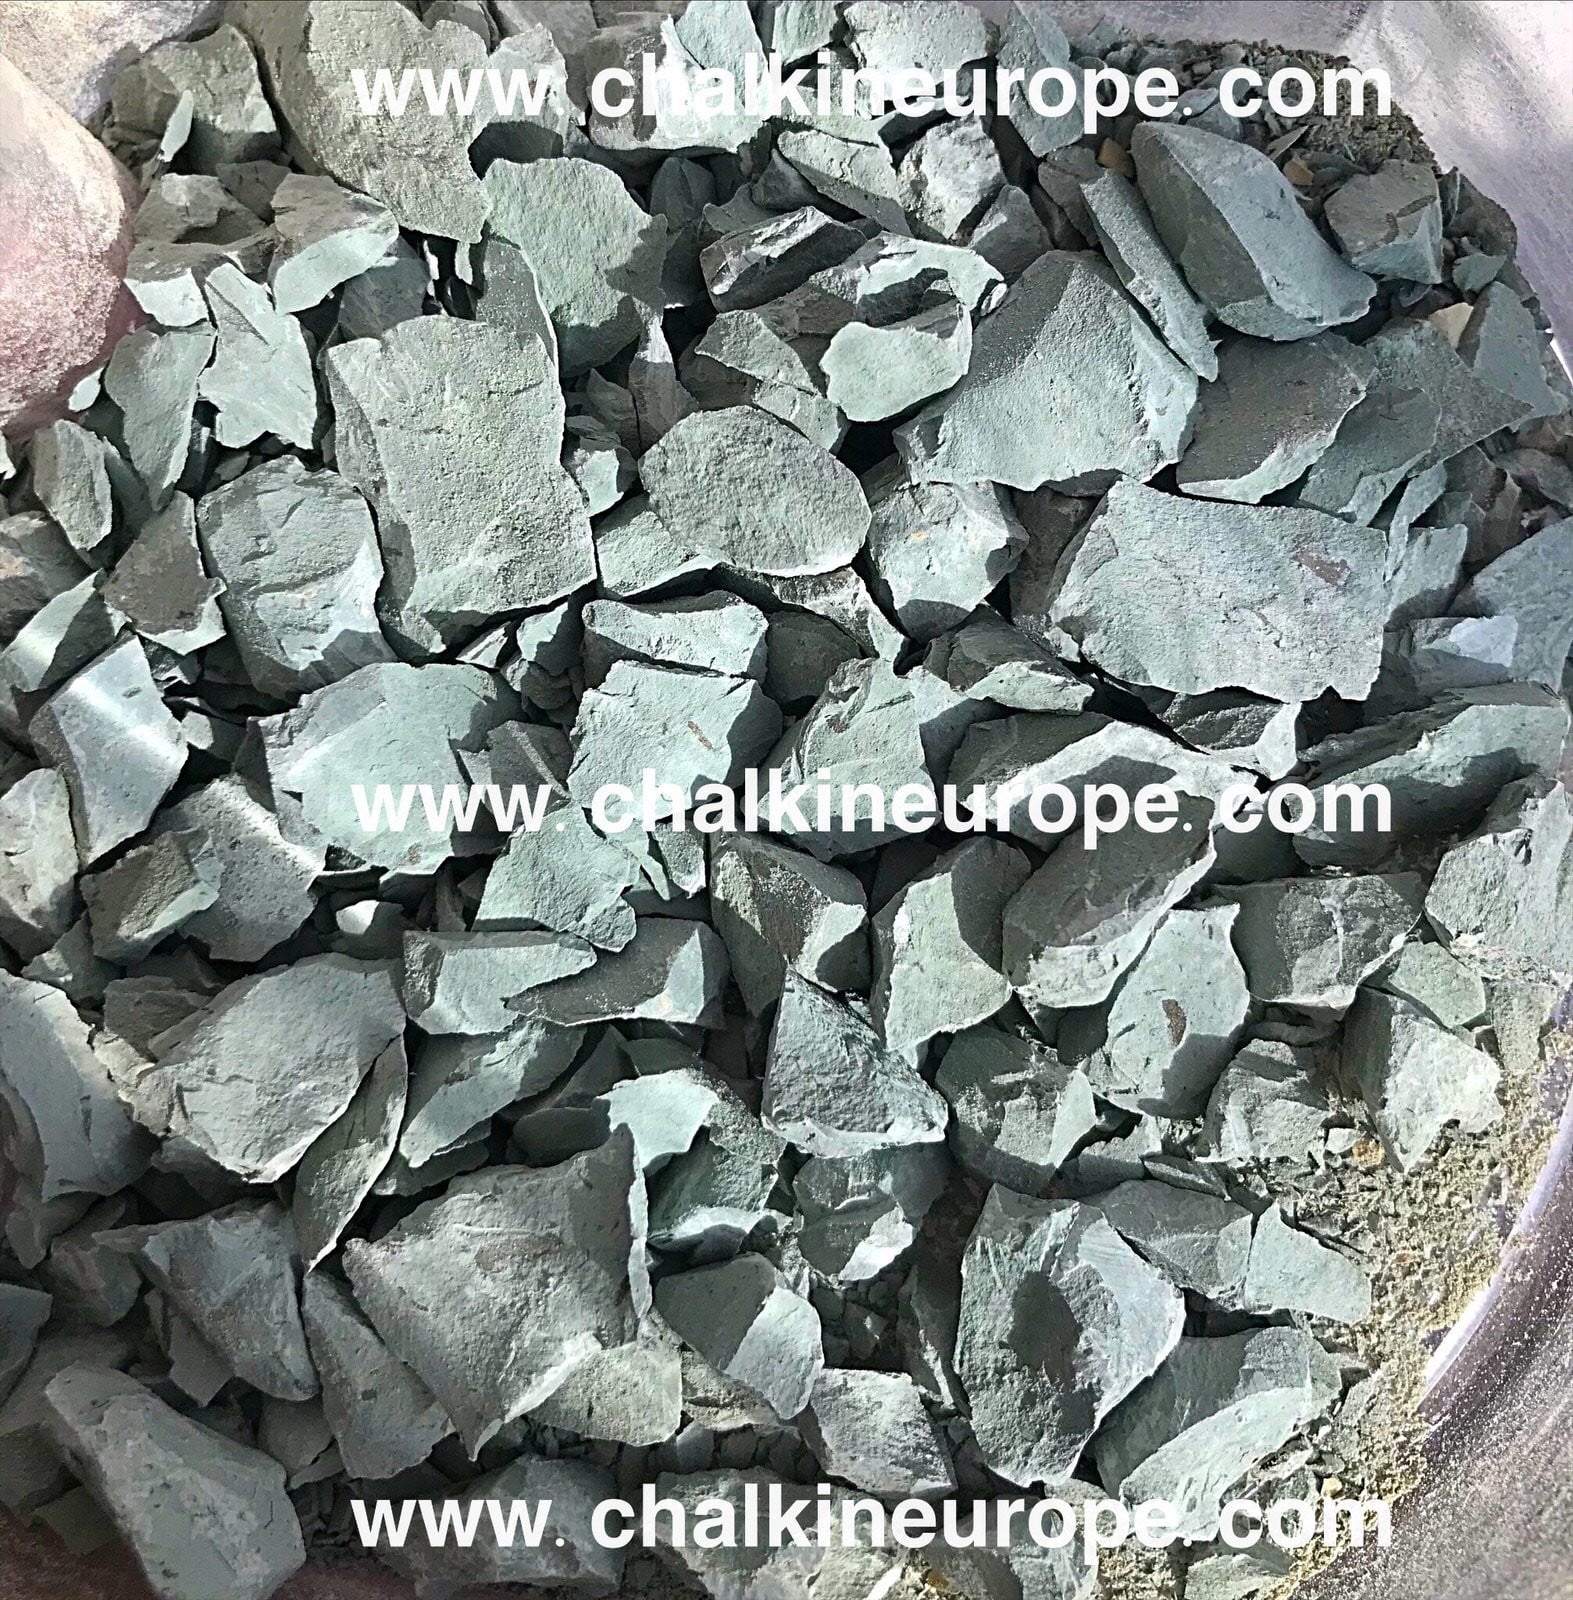 Kambrická hlína - Chalkinevropa